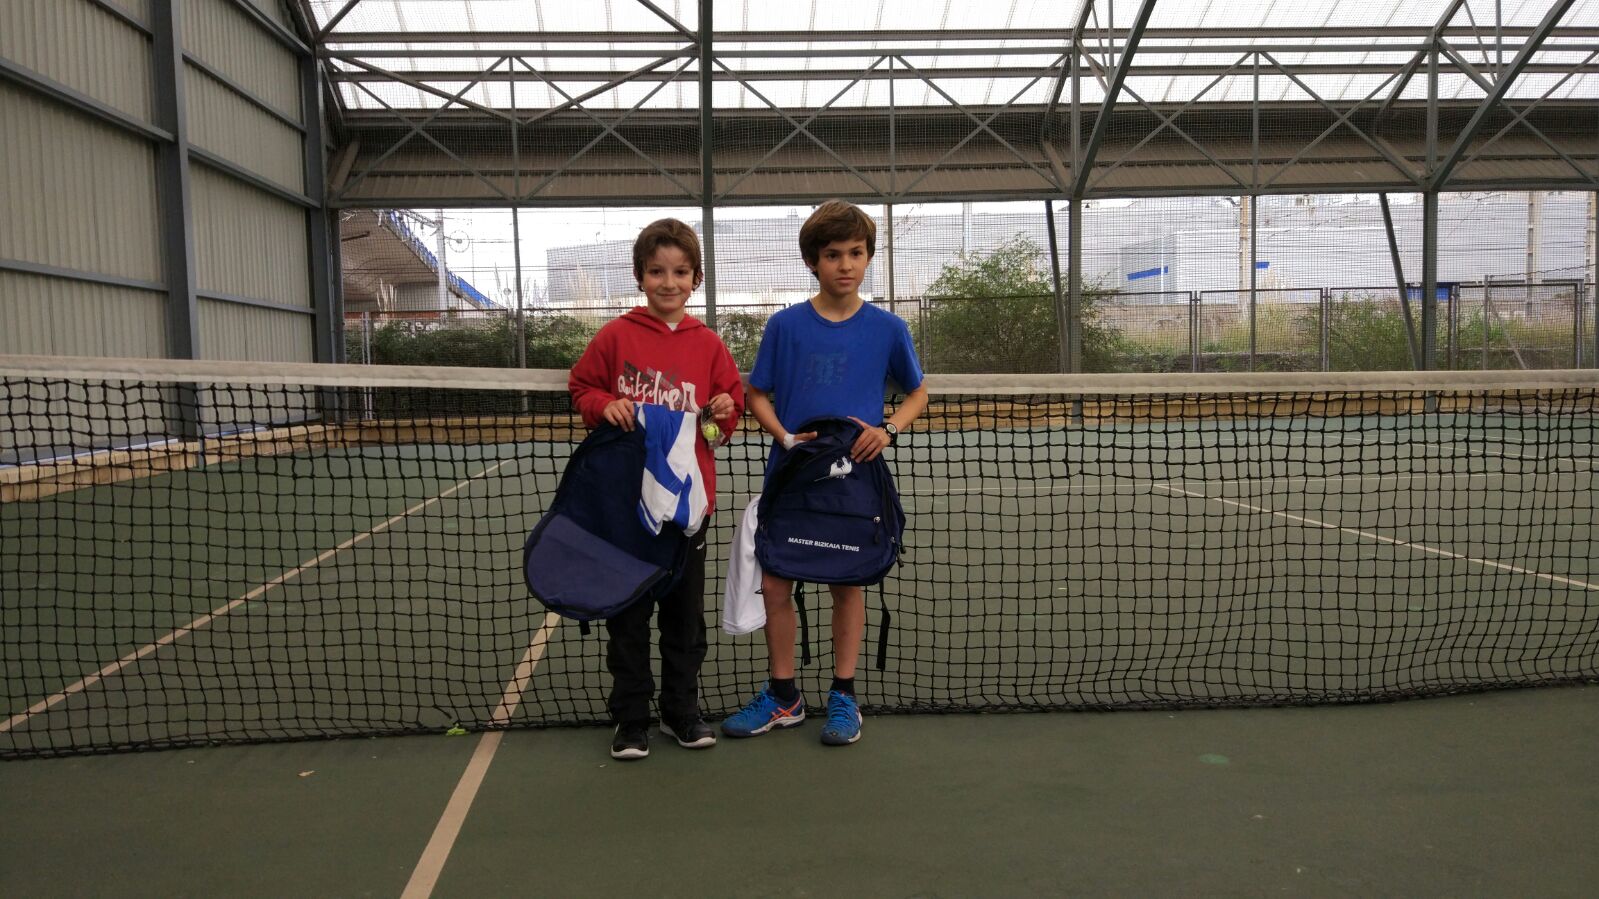 Ganadores niños benjamín del torneo de tenis